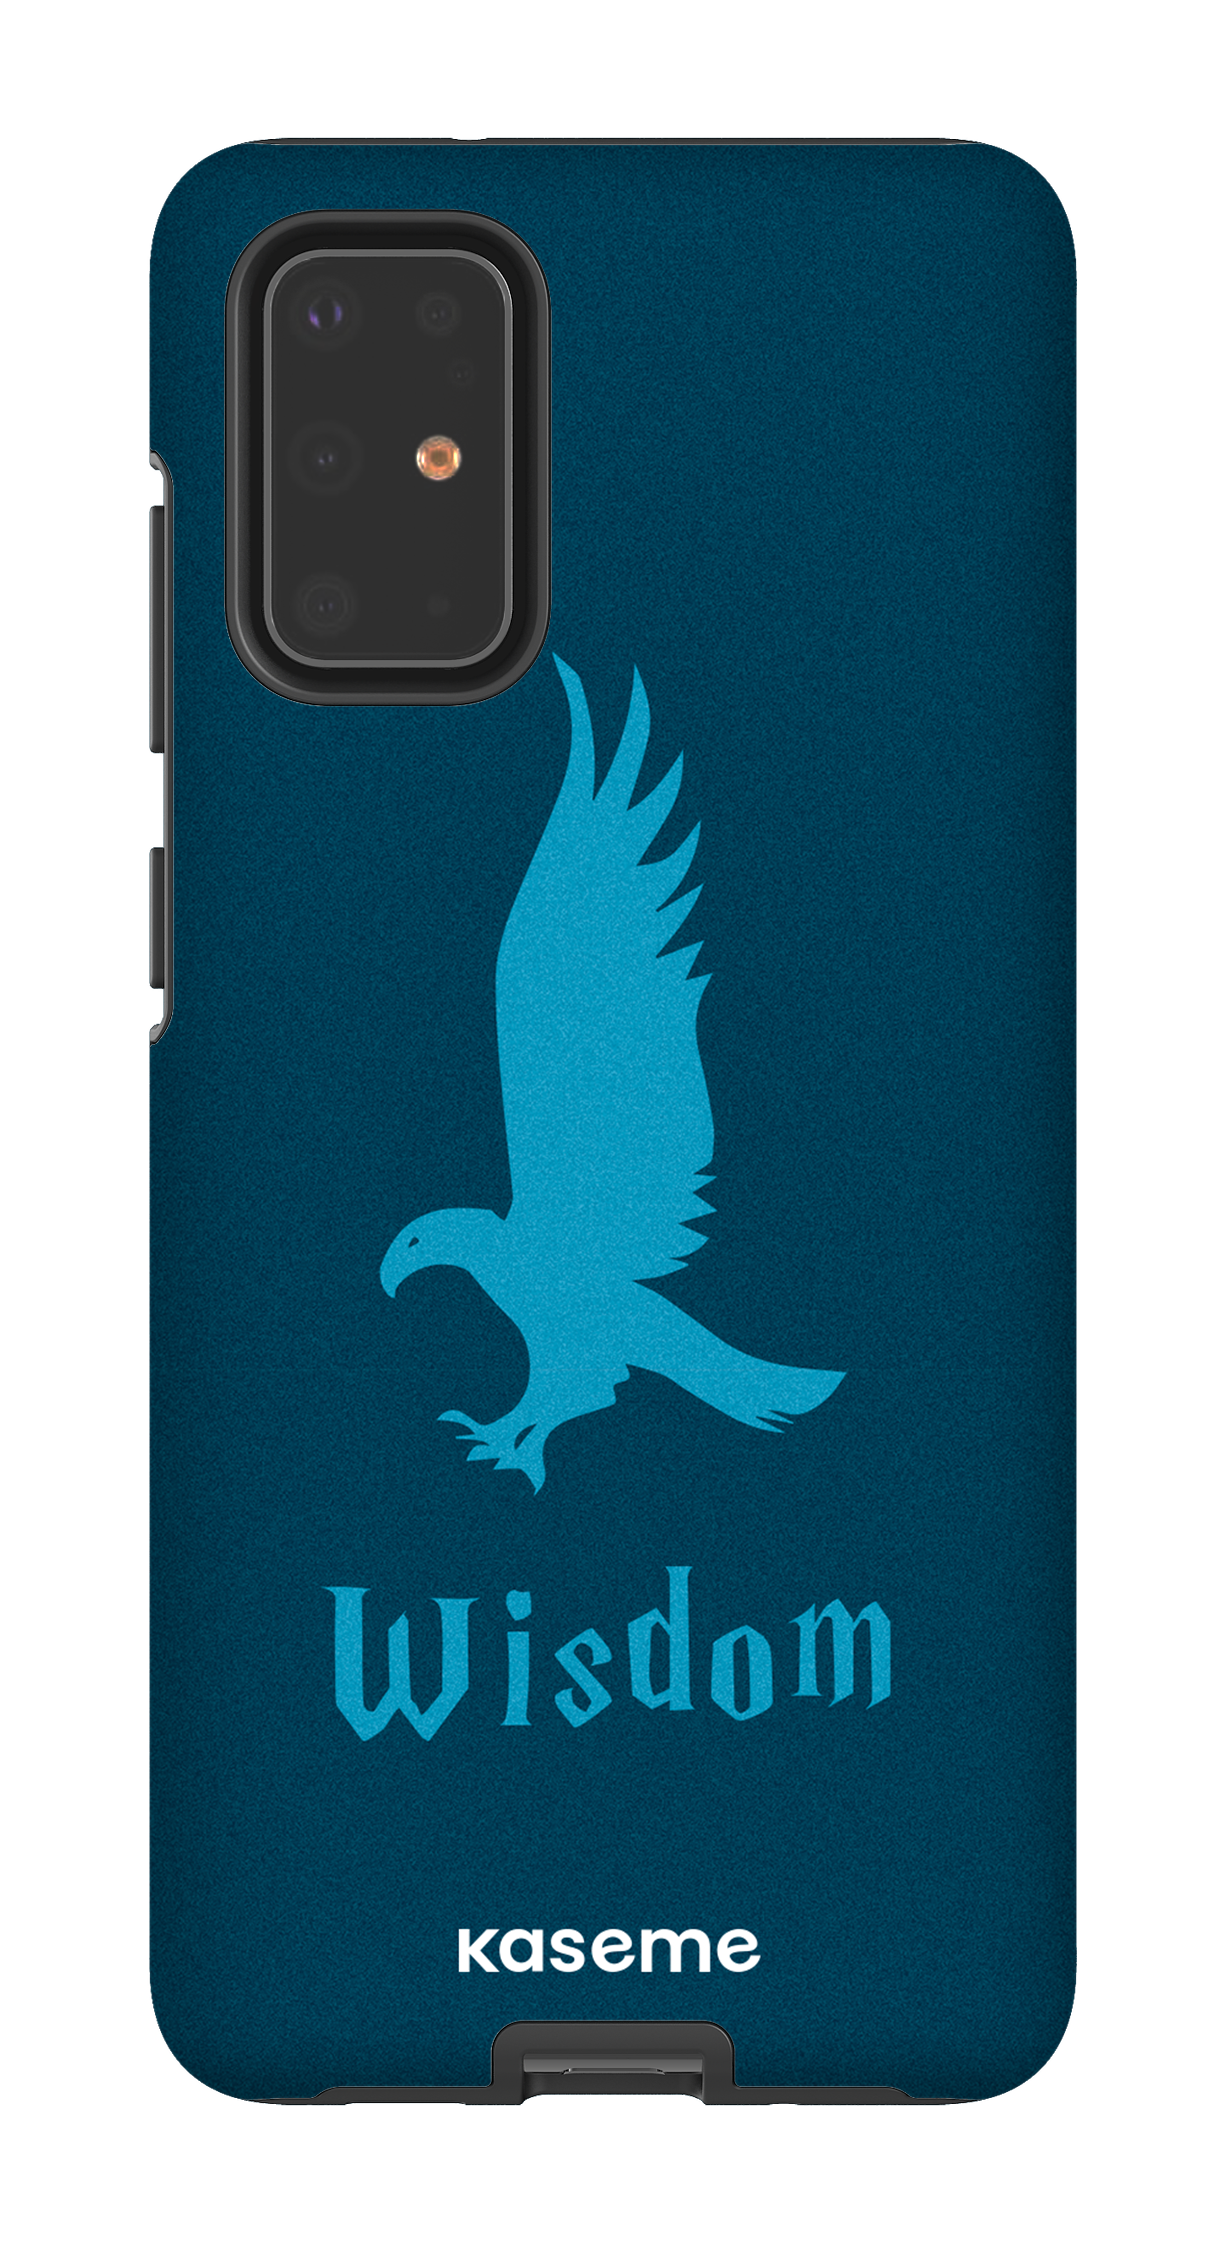 Wisdom - Galaxy S20 Plus